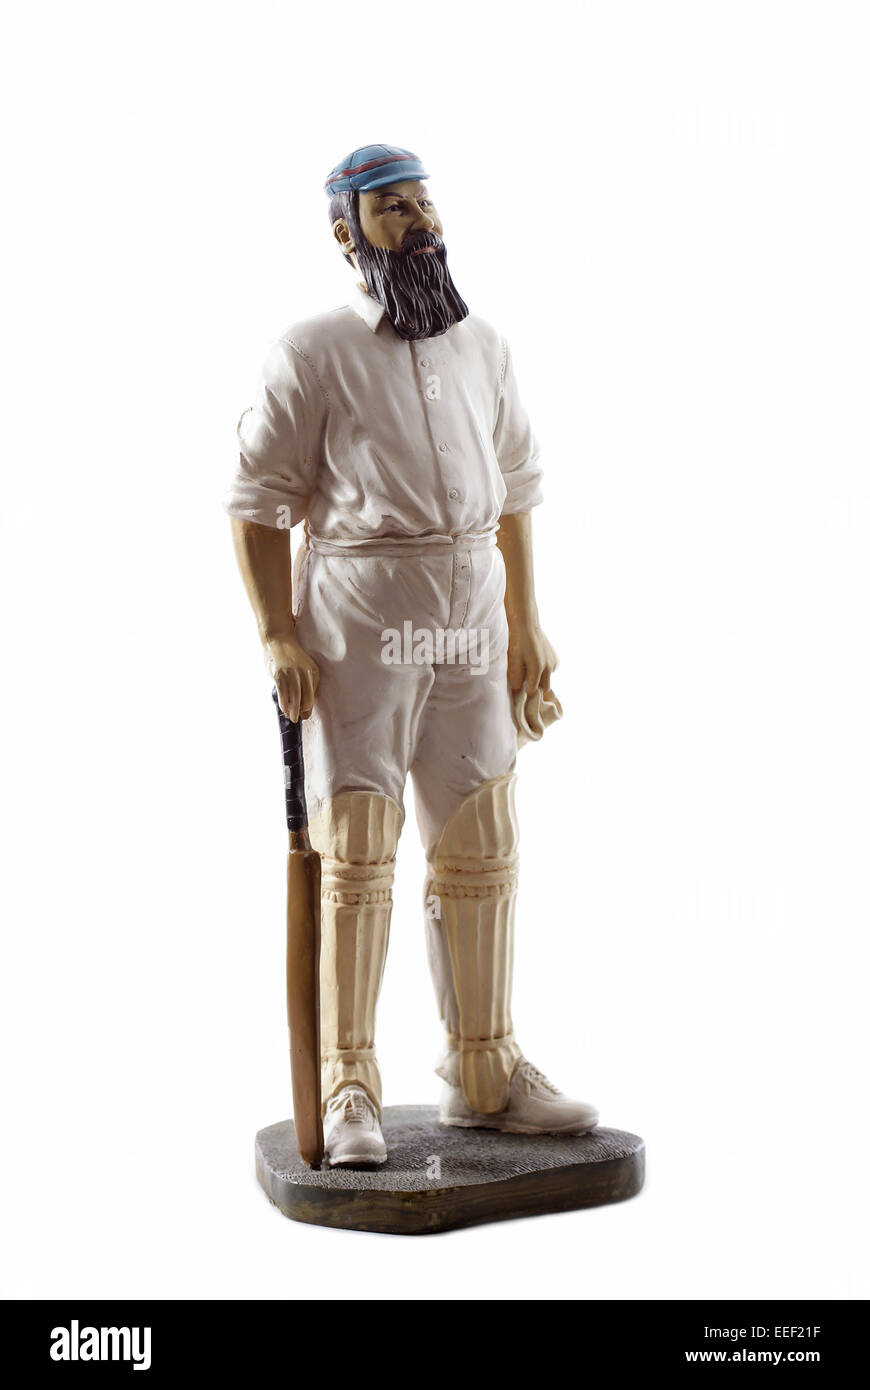 Figura de madera pintada de W.G Gracia sobre fondo blanco aislado Foto de stock